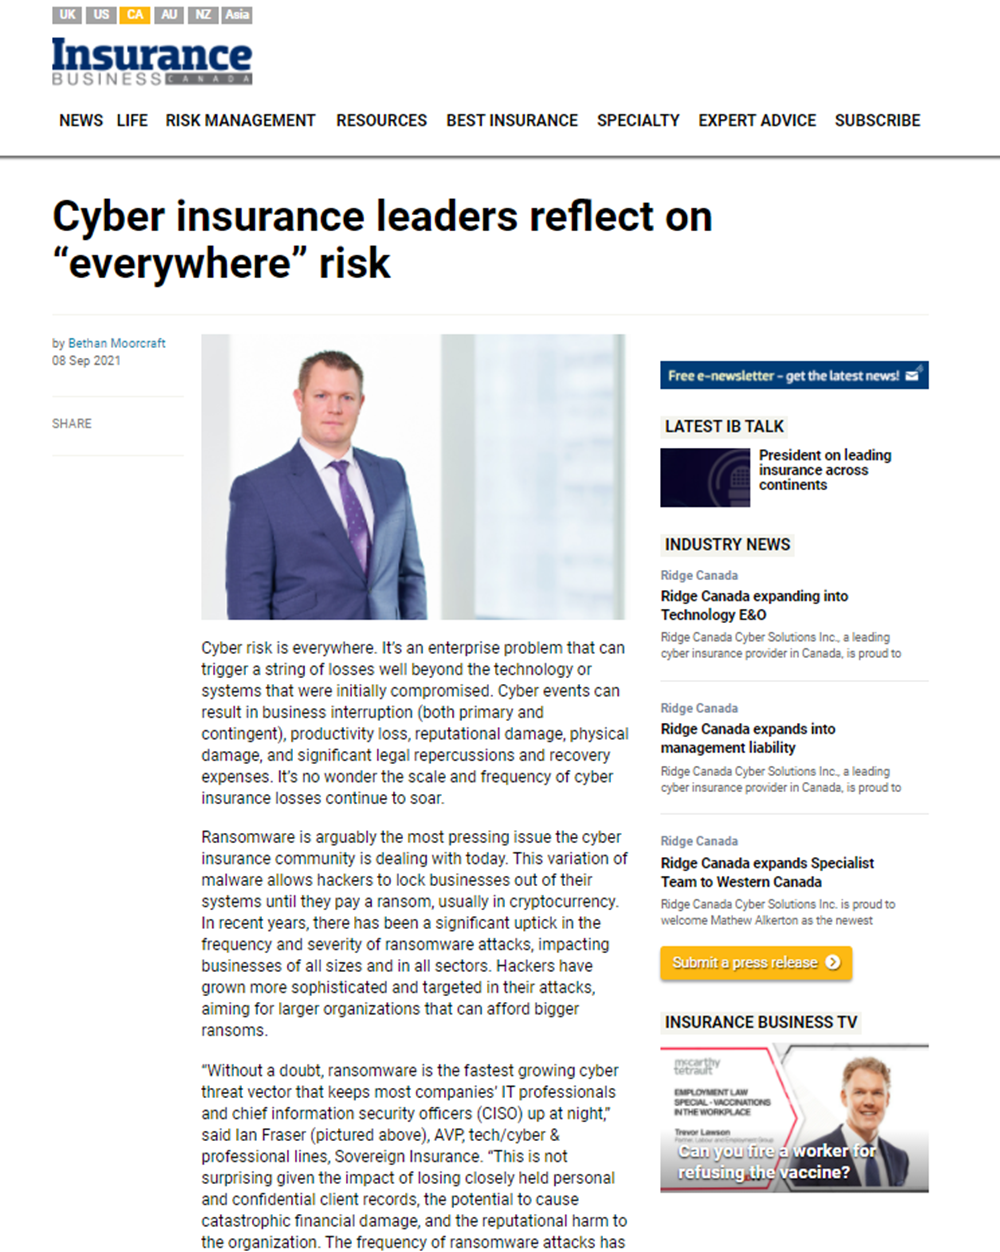 Une capture d'écran de l'article "Cyber insurance leaders reflect on 'everywhere' risk" en anglais